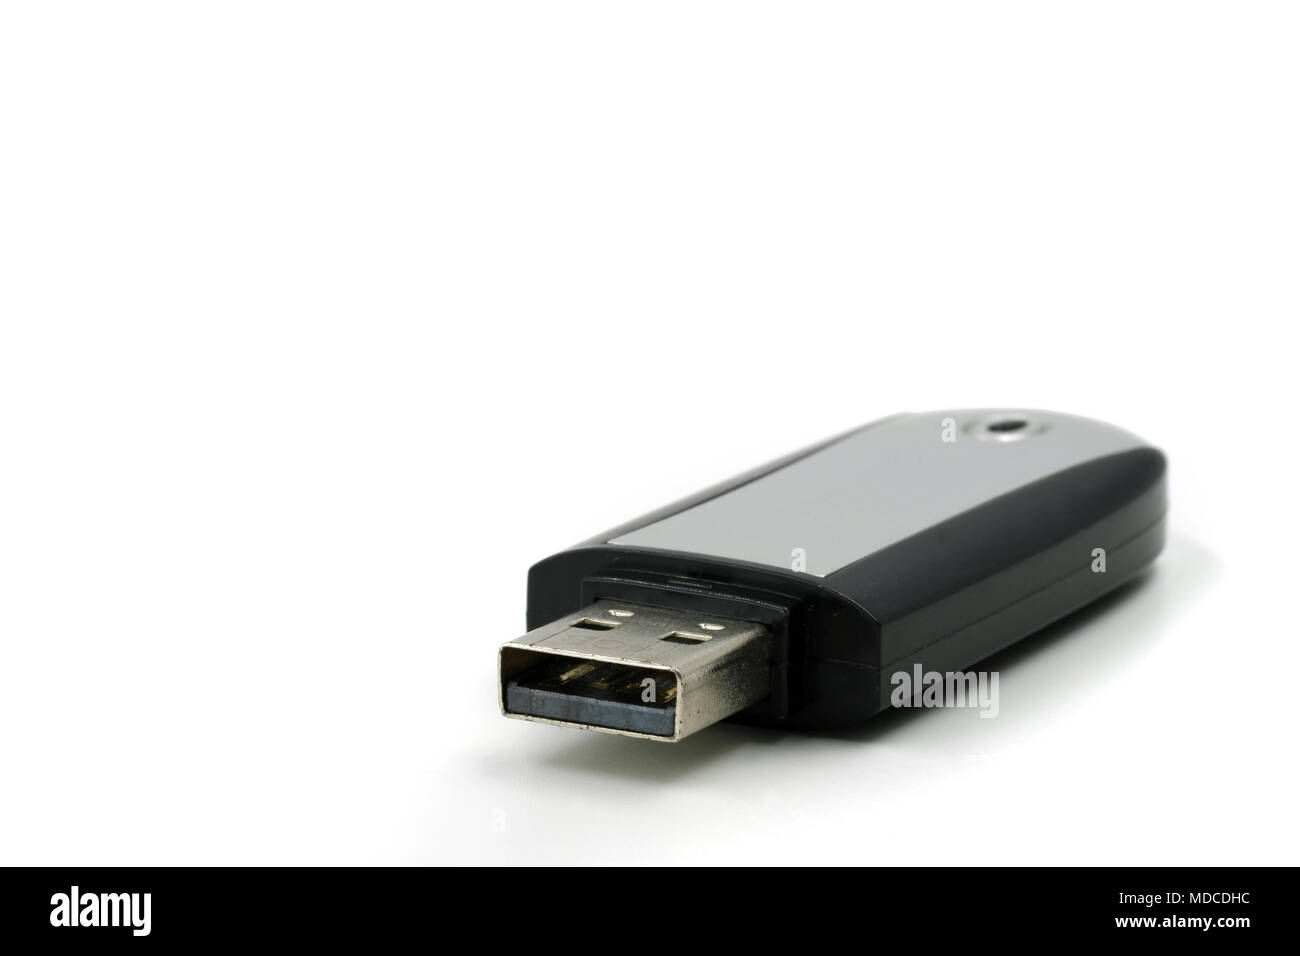 La unidad de memoria USB portátil con sombras reflejadas sobre blanco Foto de stock